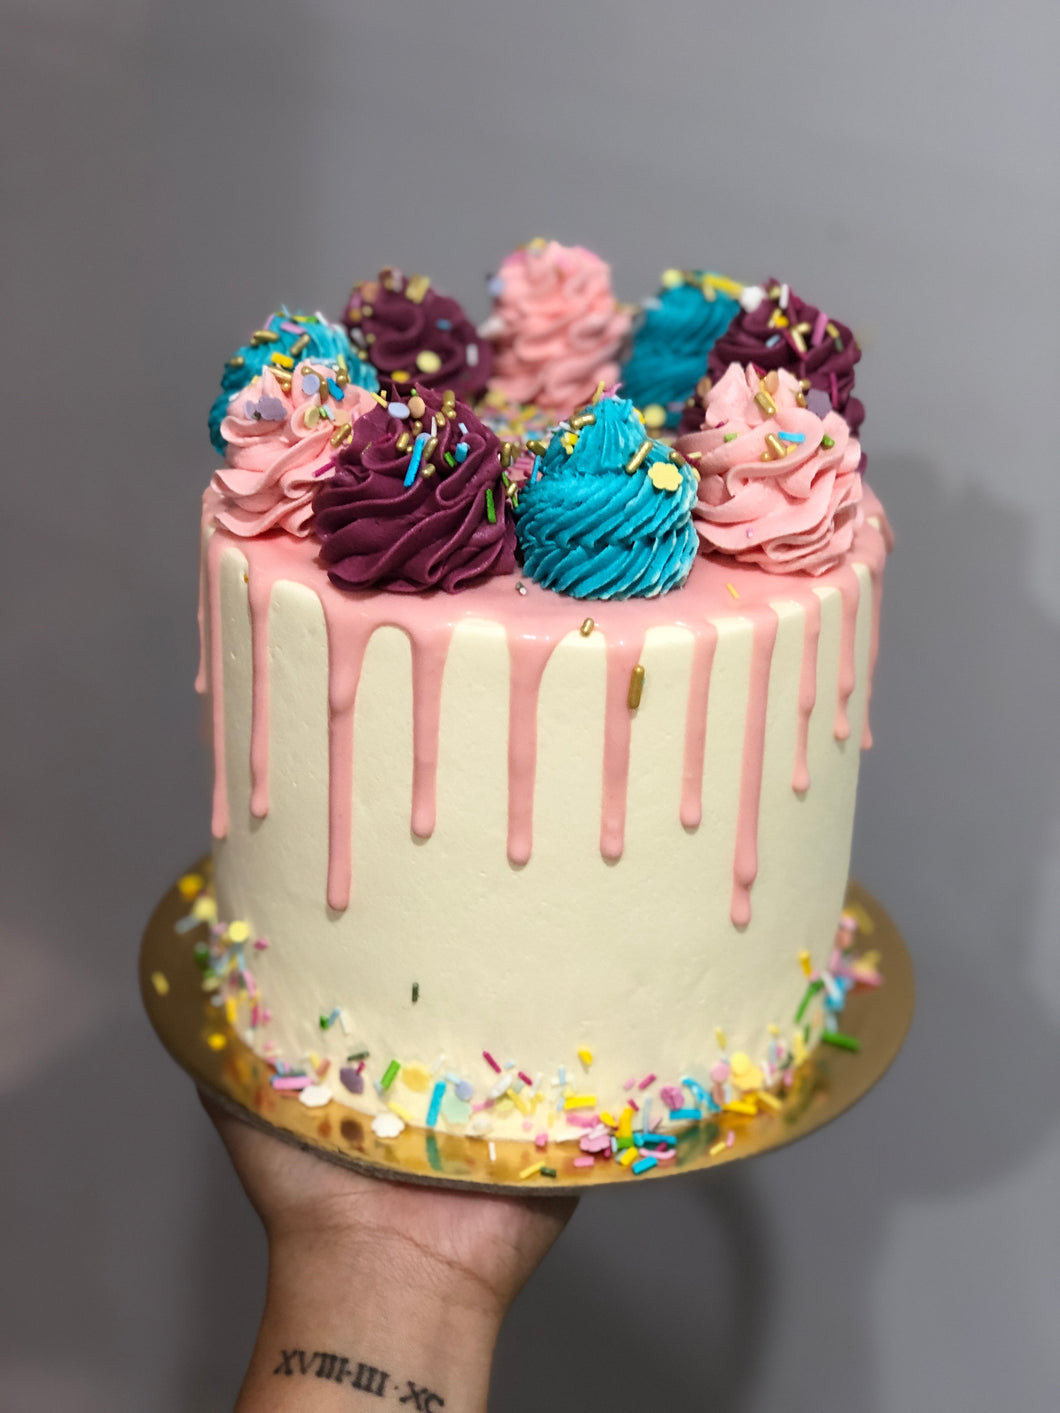 6” Elizabeth Cake